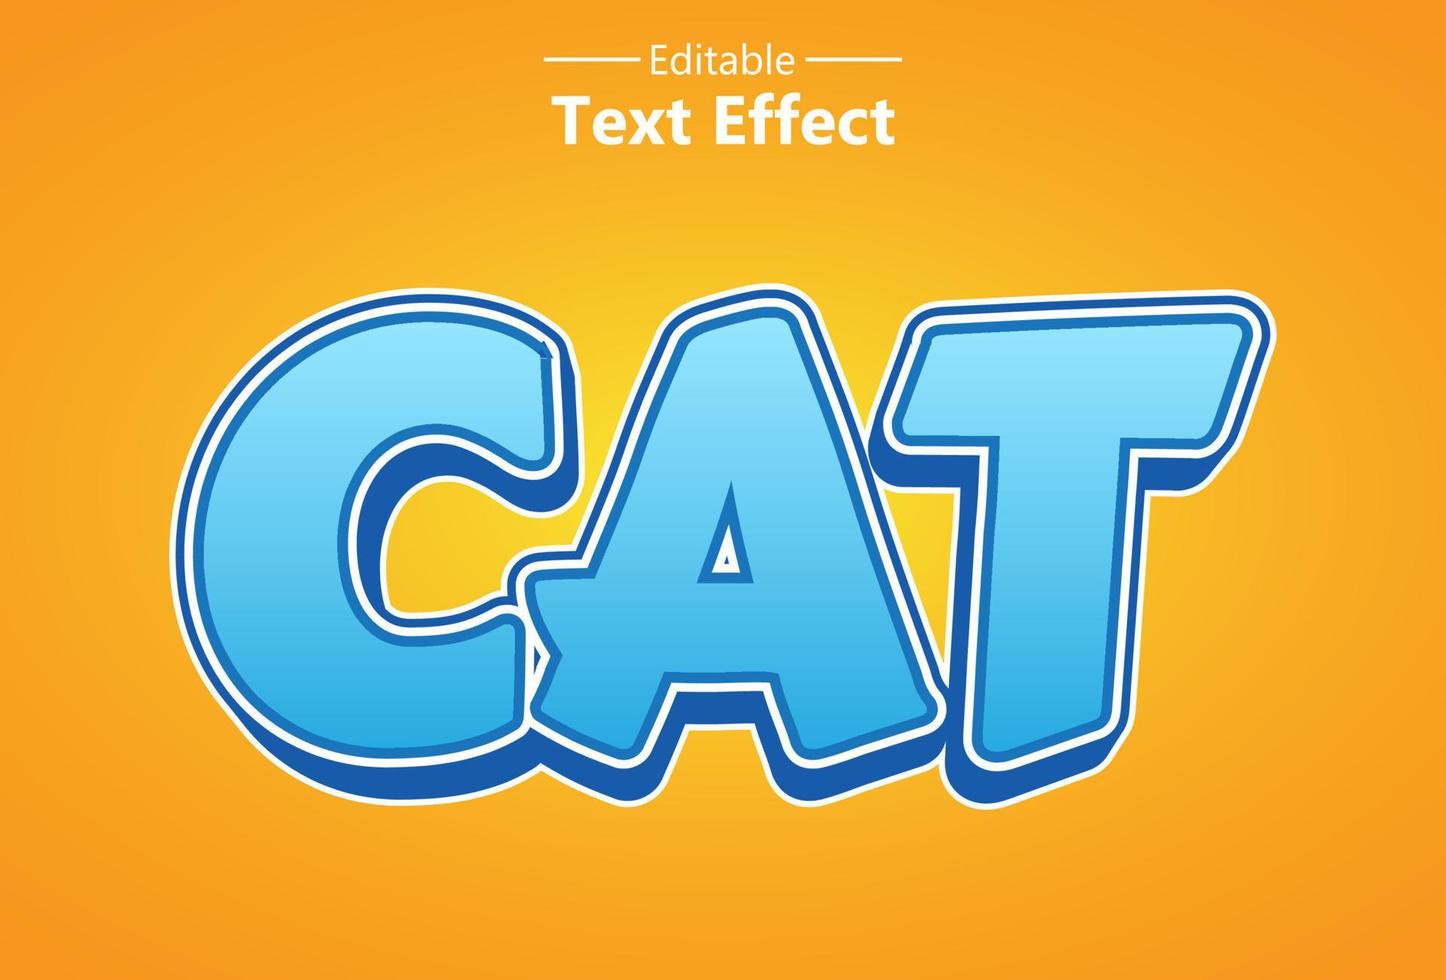 effet de texte chat avec couleur orange pour la marque. vecteur